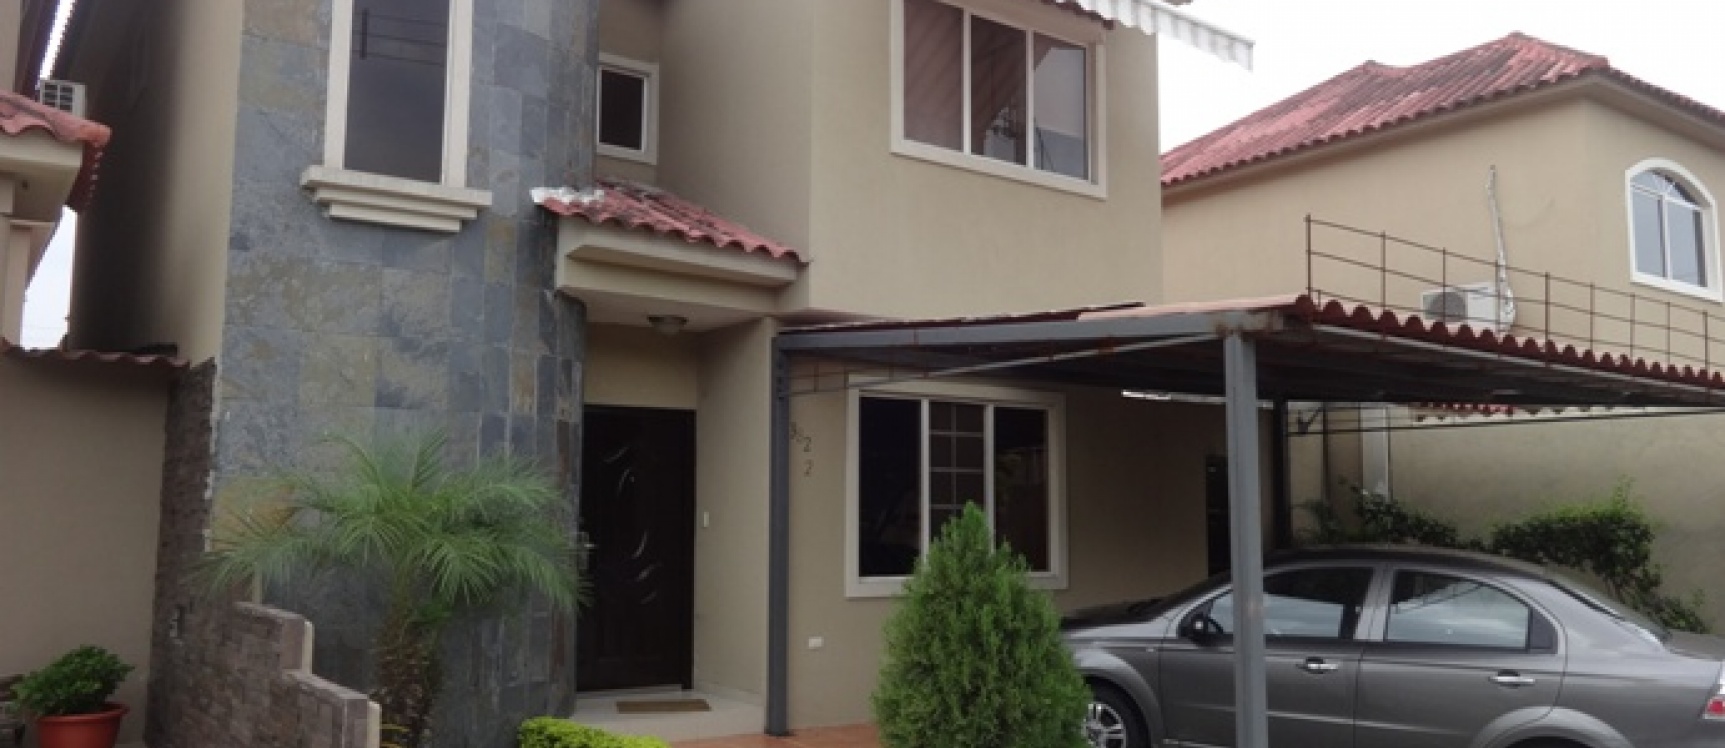 GeoBienes - Casa en venta Via a la Costa Guayaquil, vendo una casa en Portal al sol - Plusvalia Guayaquil Casas de venta y alquiler Inmobiliaria Ecuador